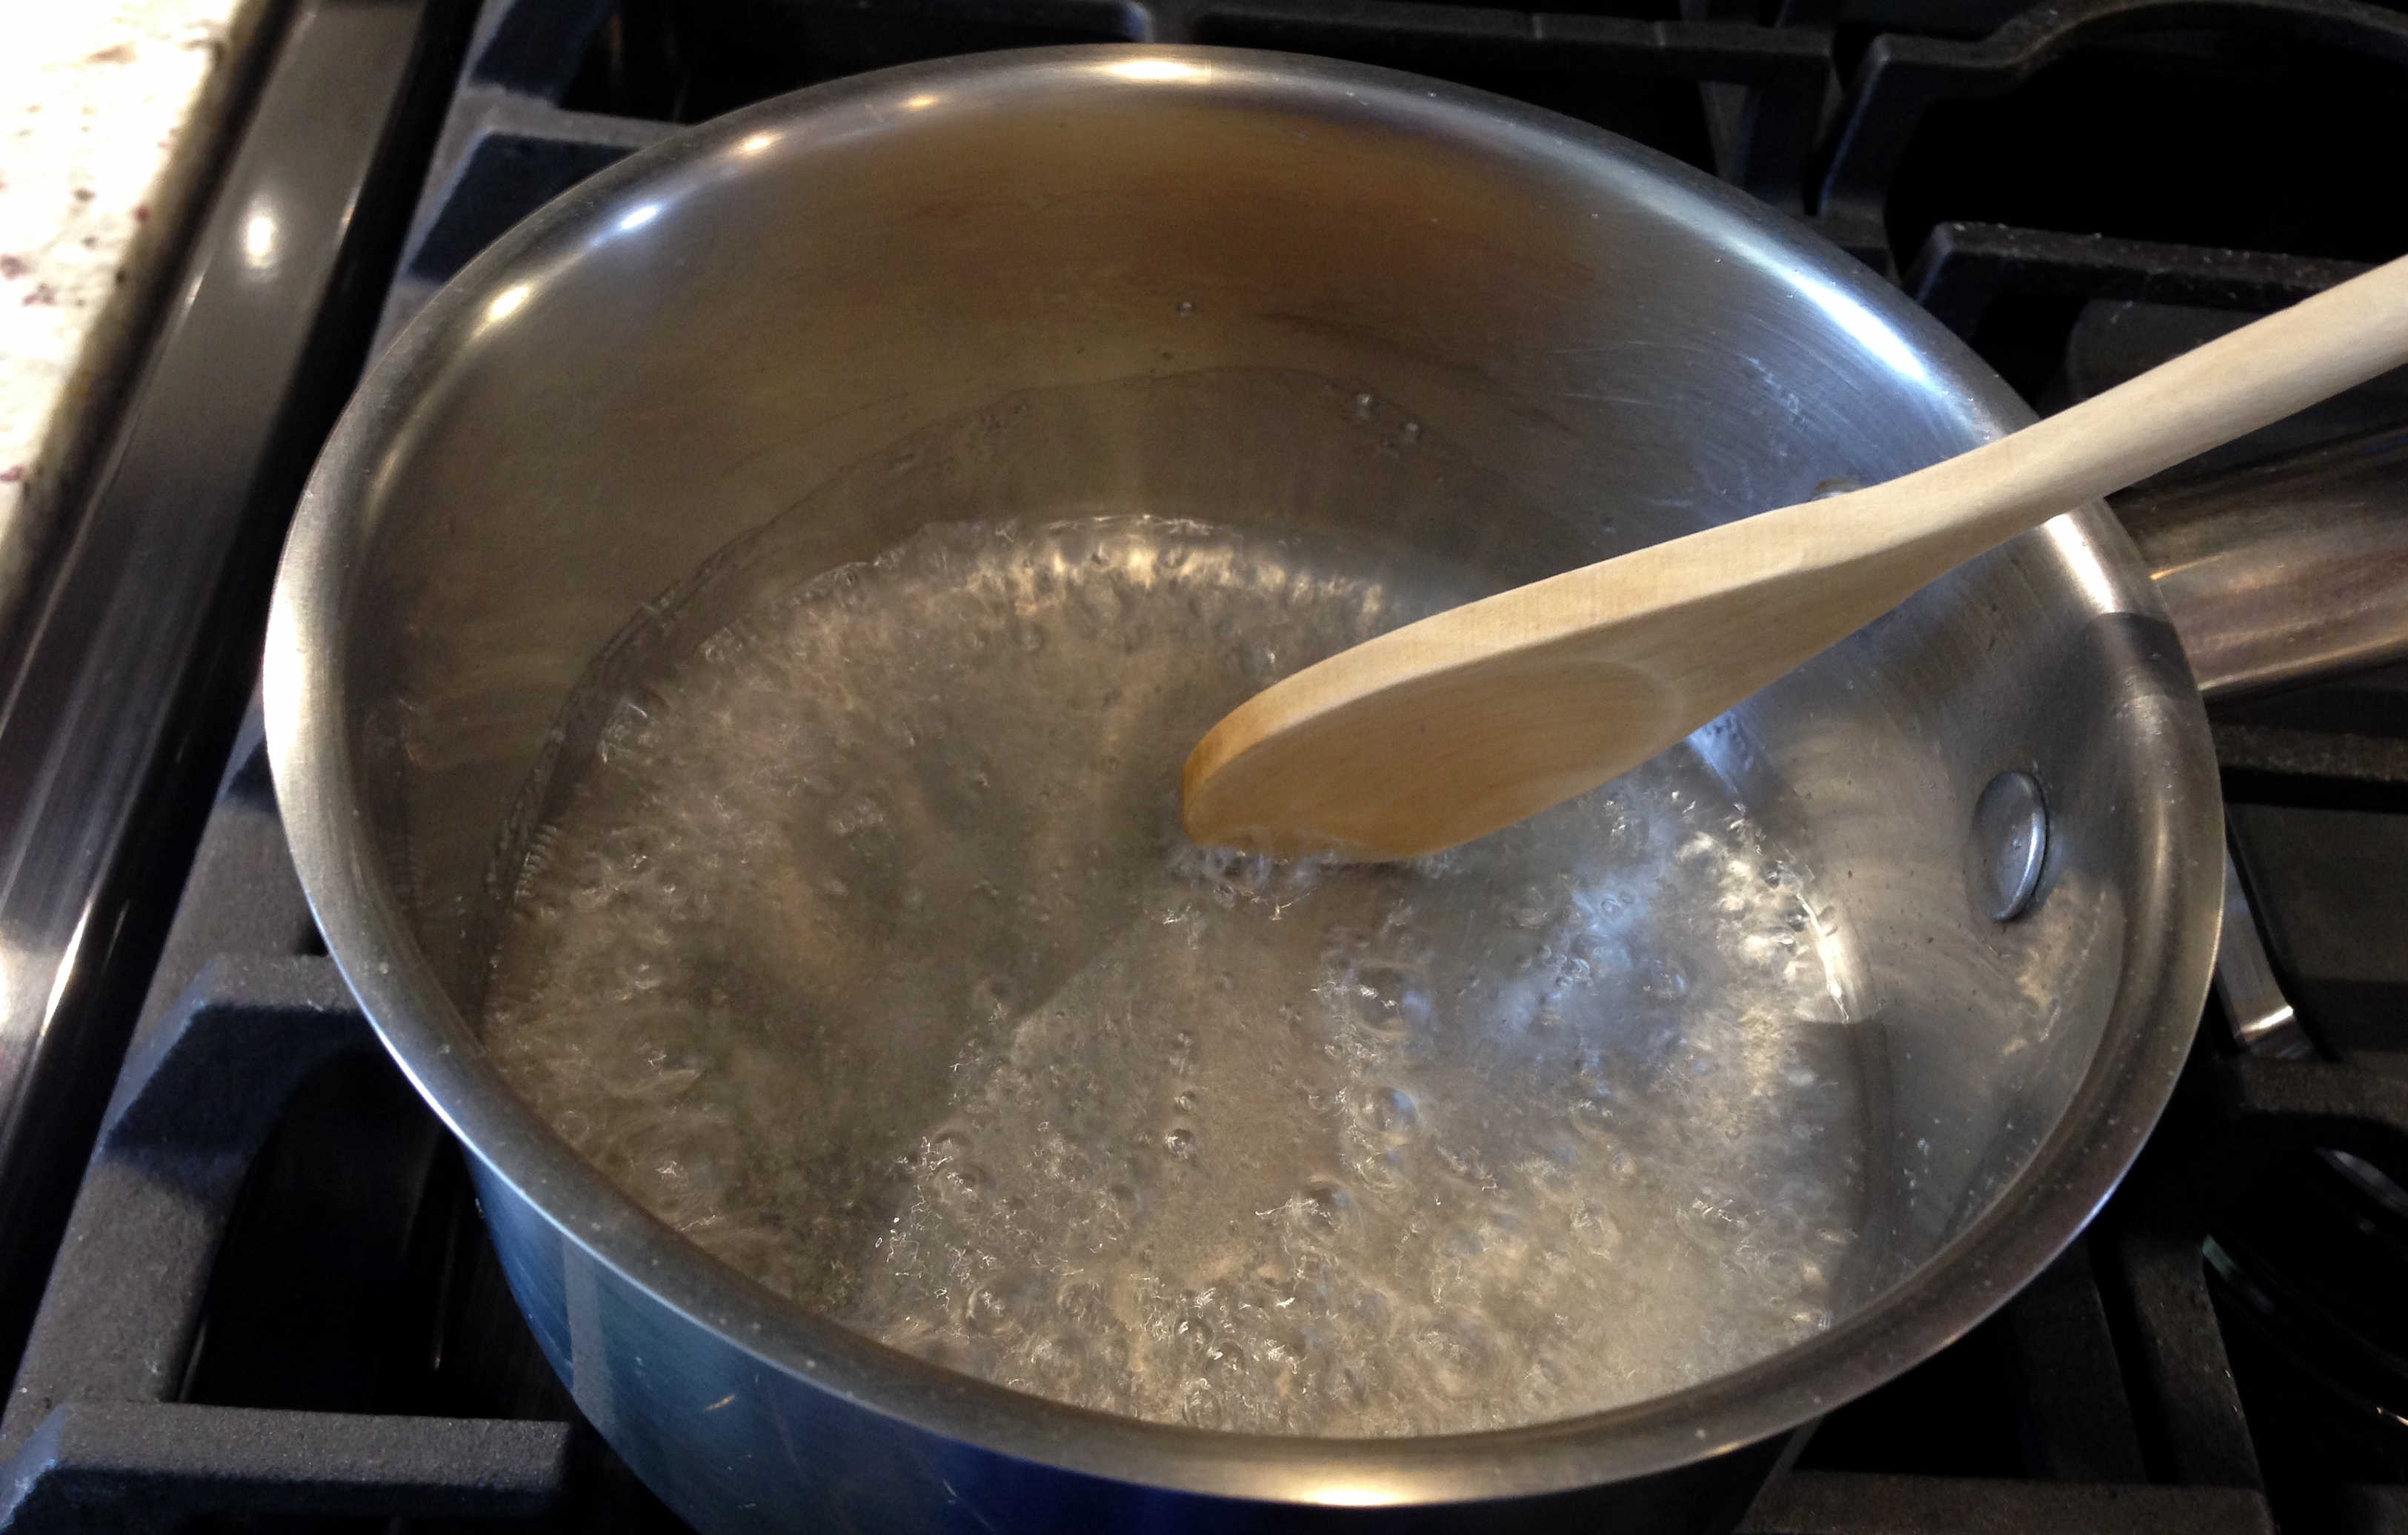 Boil to dissolve sugar